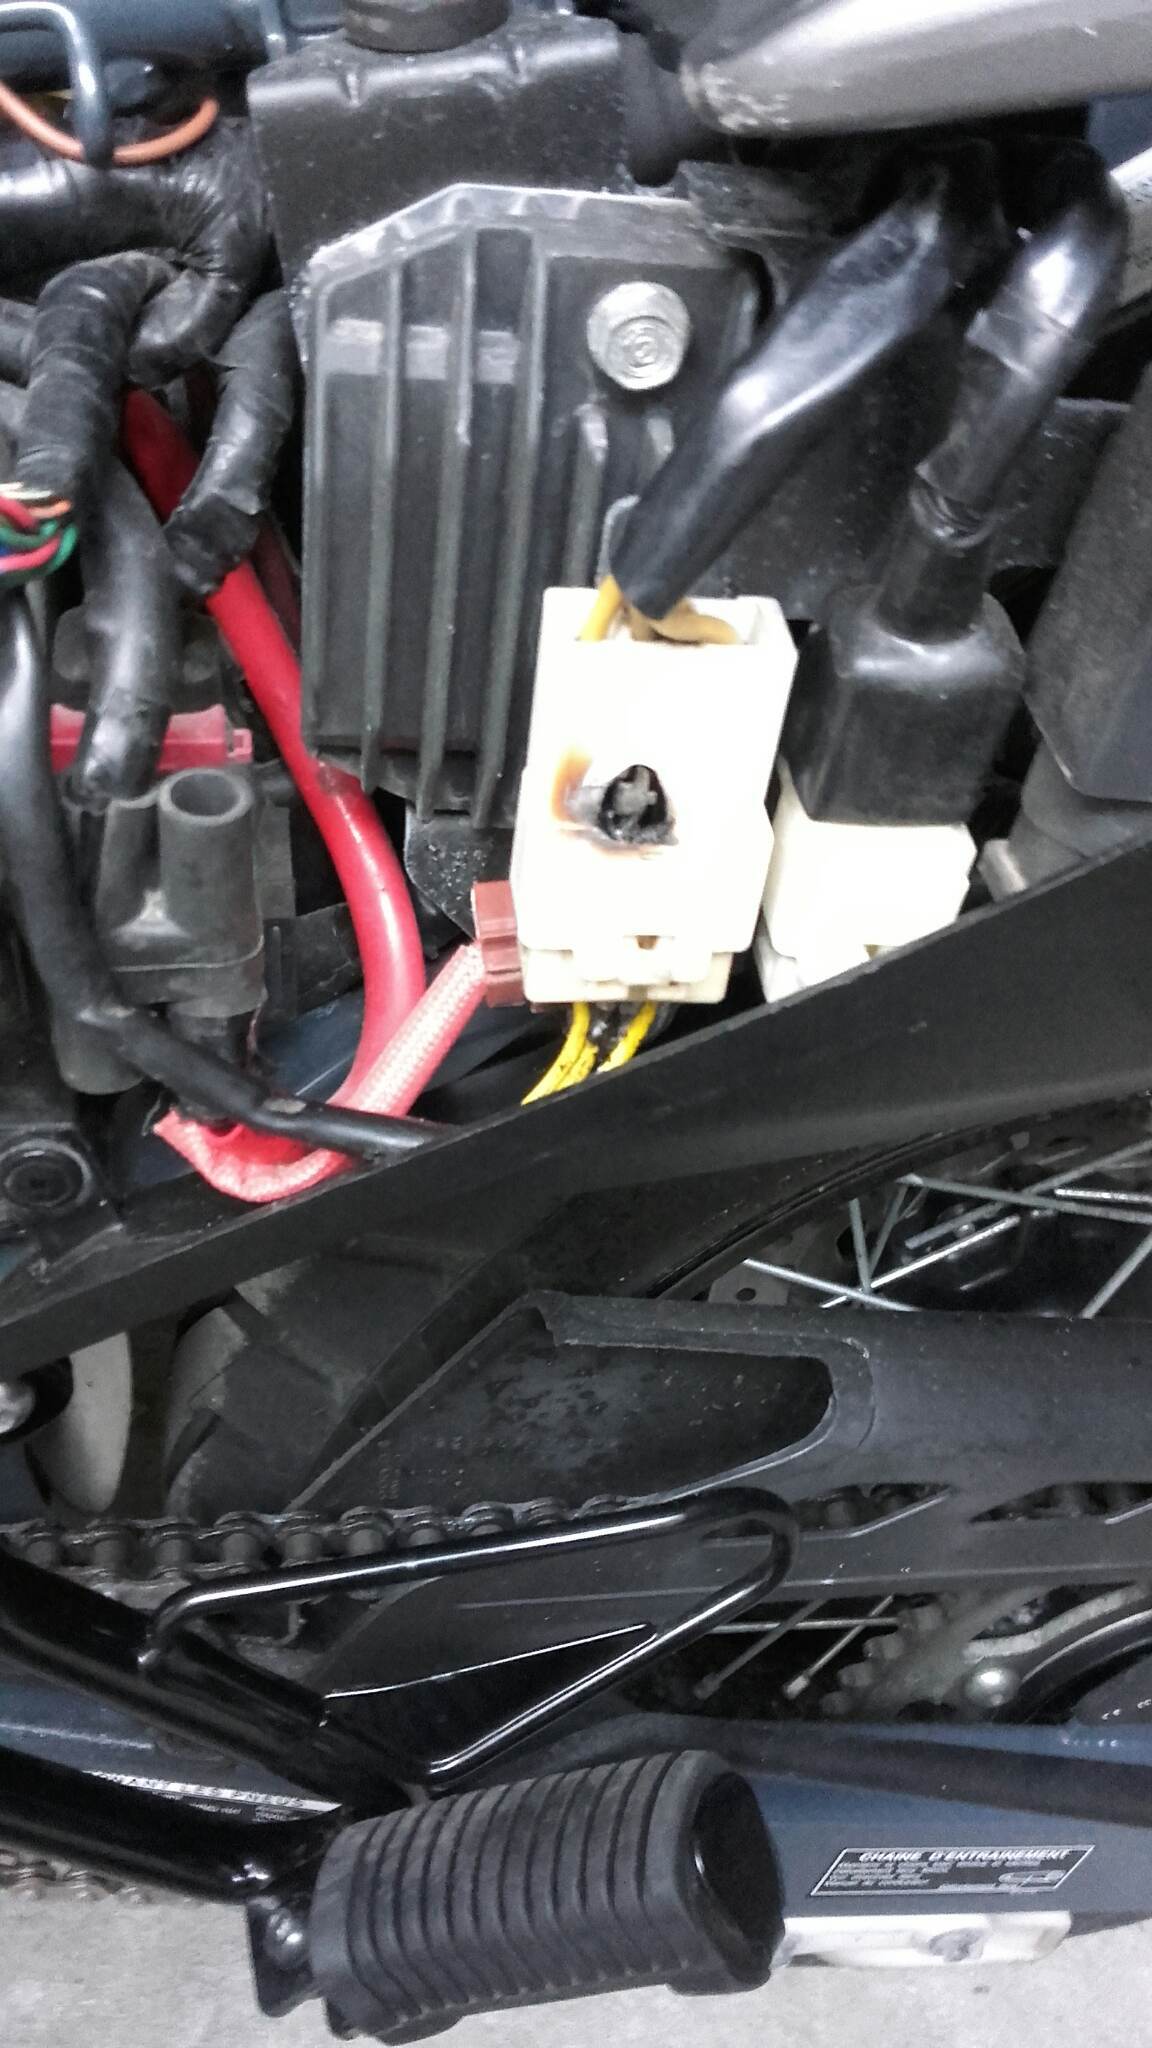 Pourquoi ma voiture sent-elle les œufs pourris ? Comment je le répare?